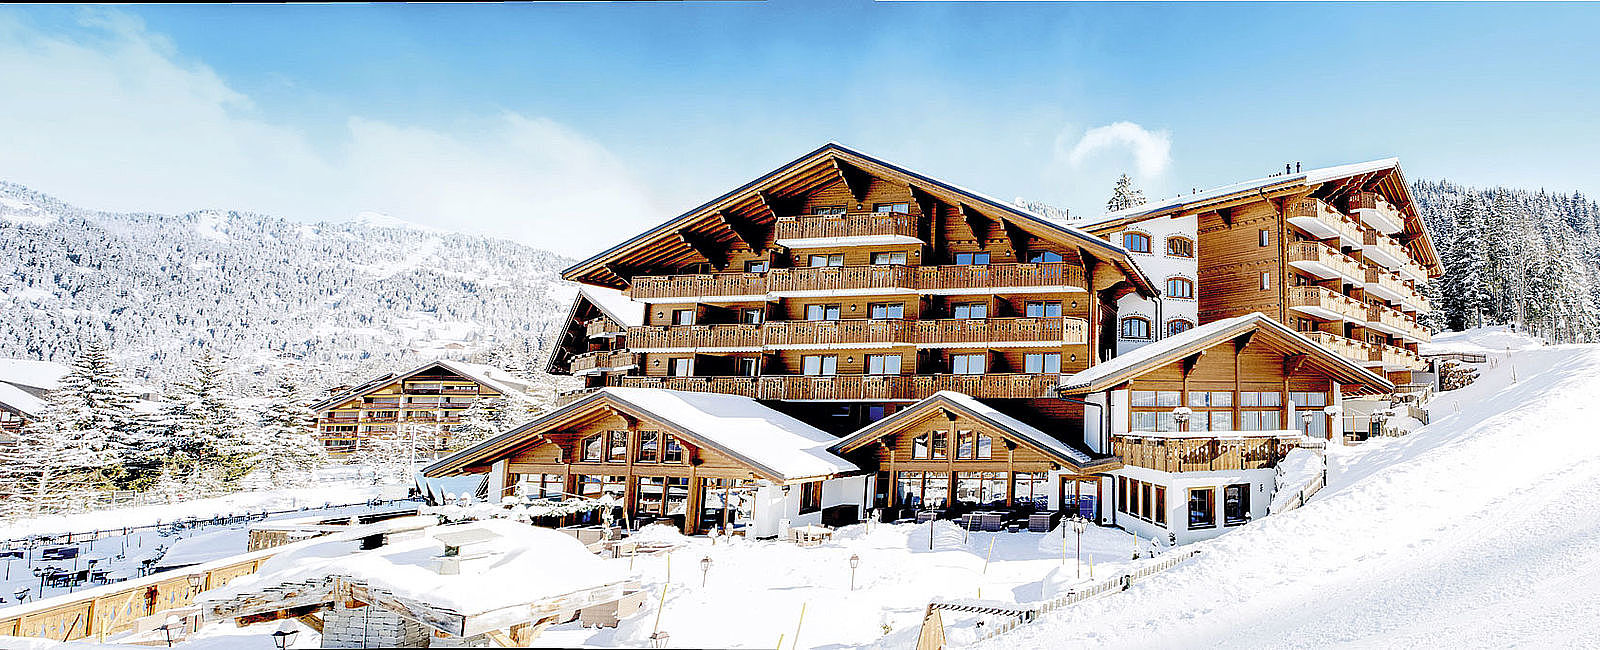 HOTEL ANGEBOTE
 Chalet RoyAlp Hôtel & Spa: Winter-Cocooning 
